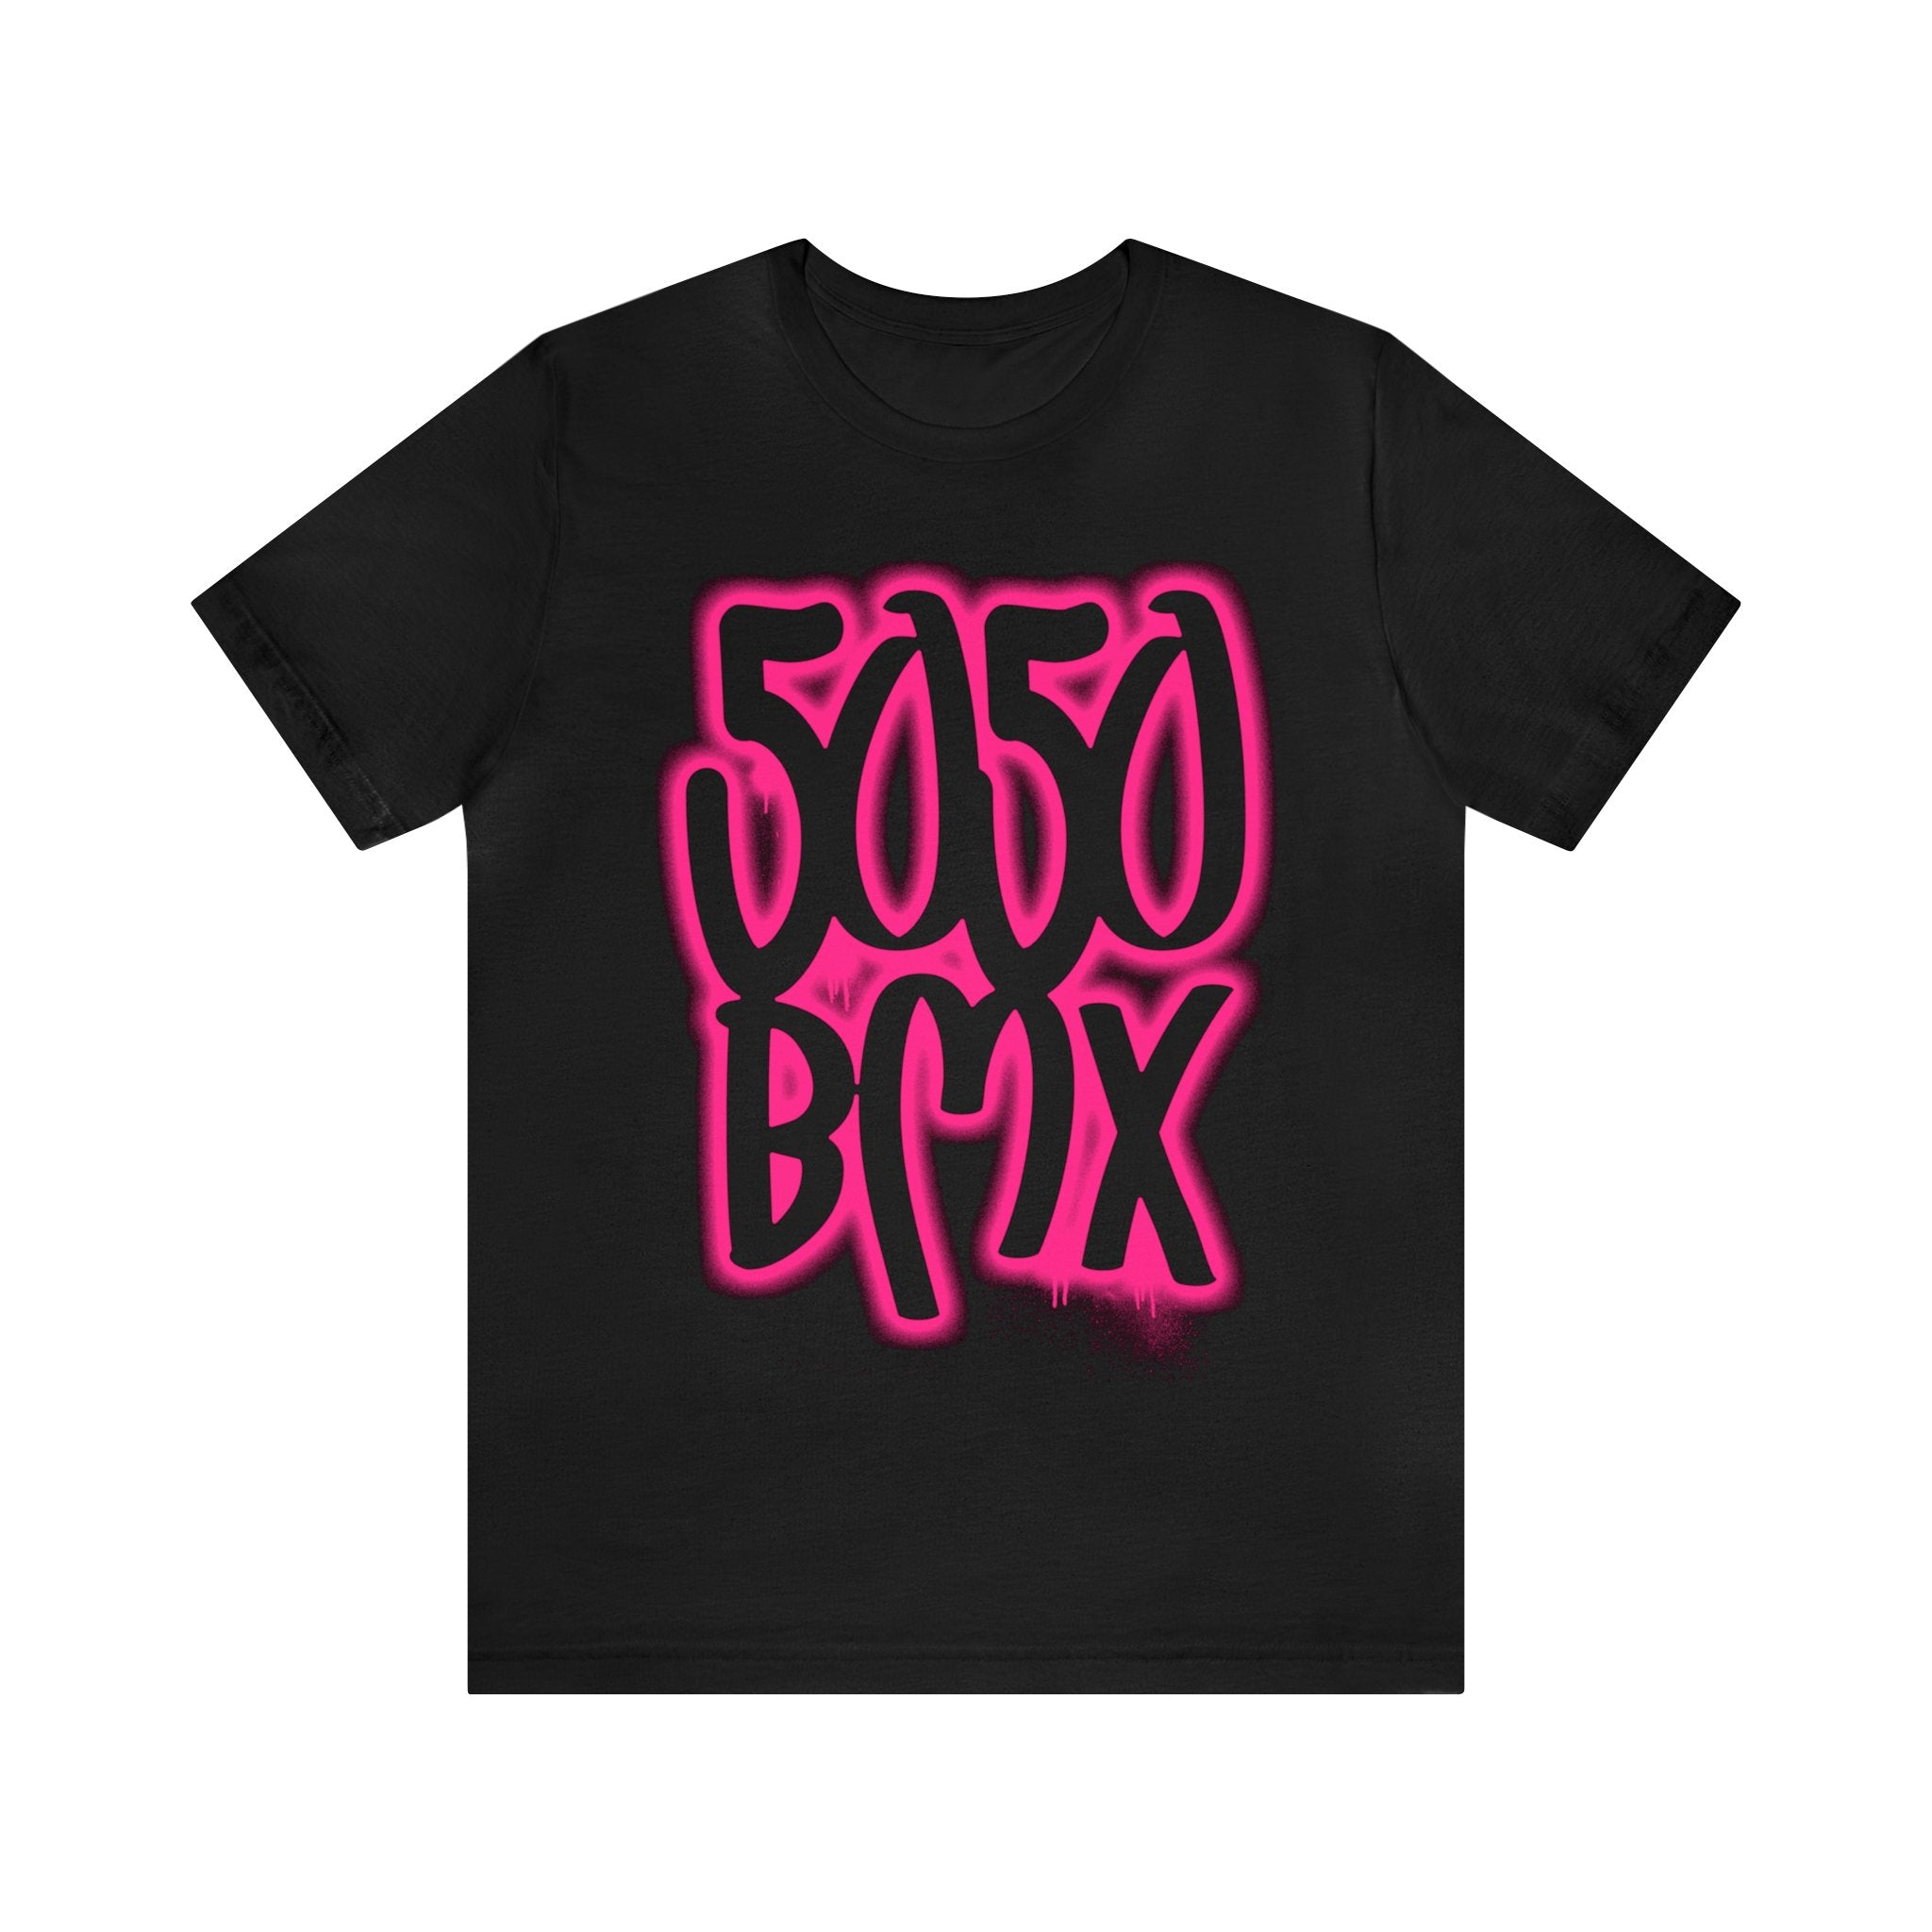 5050bmx Graffiti (Pink) - Short Sleeve Tee